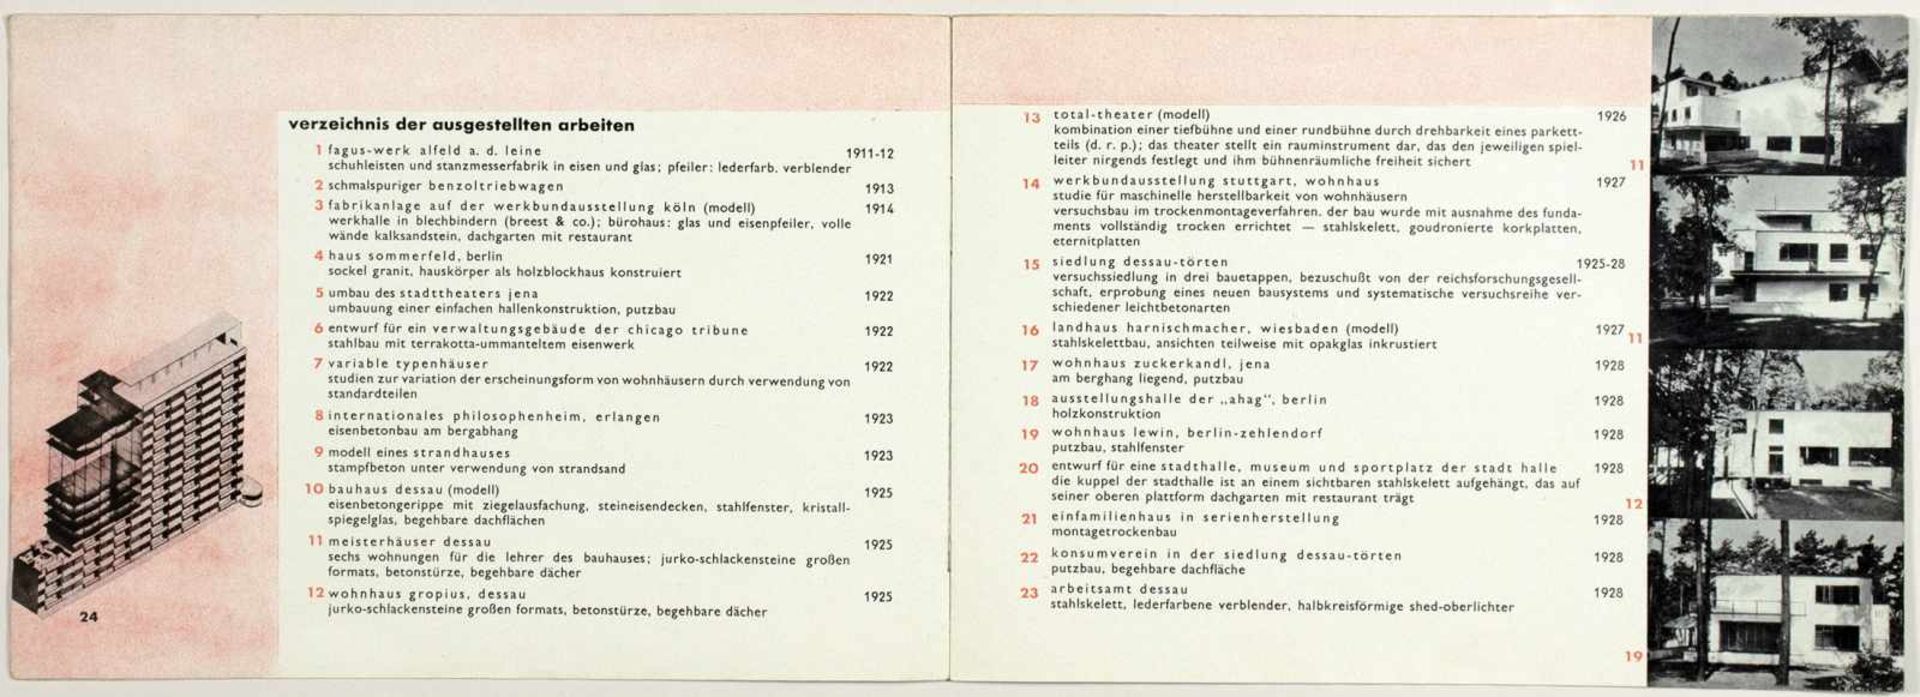 Laszlo Moholy-Nagy - Ausstellung Walter Gropius. Zeichnungen, Fotos, Modelle in der ständigen - Bild 3 aus 8